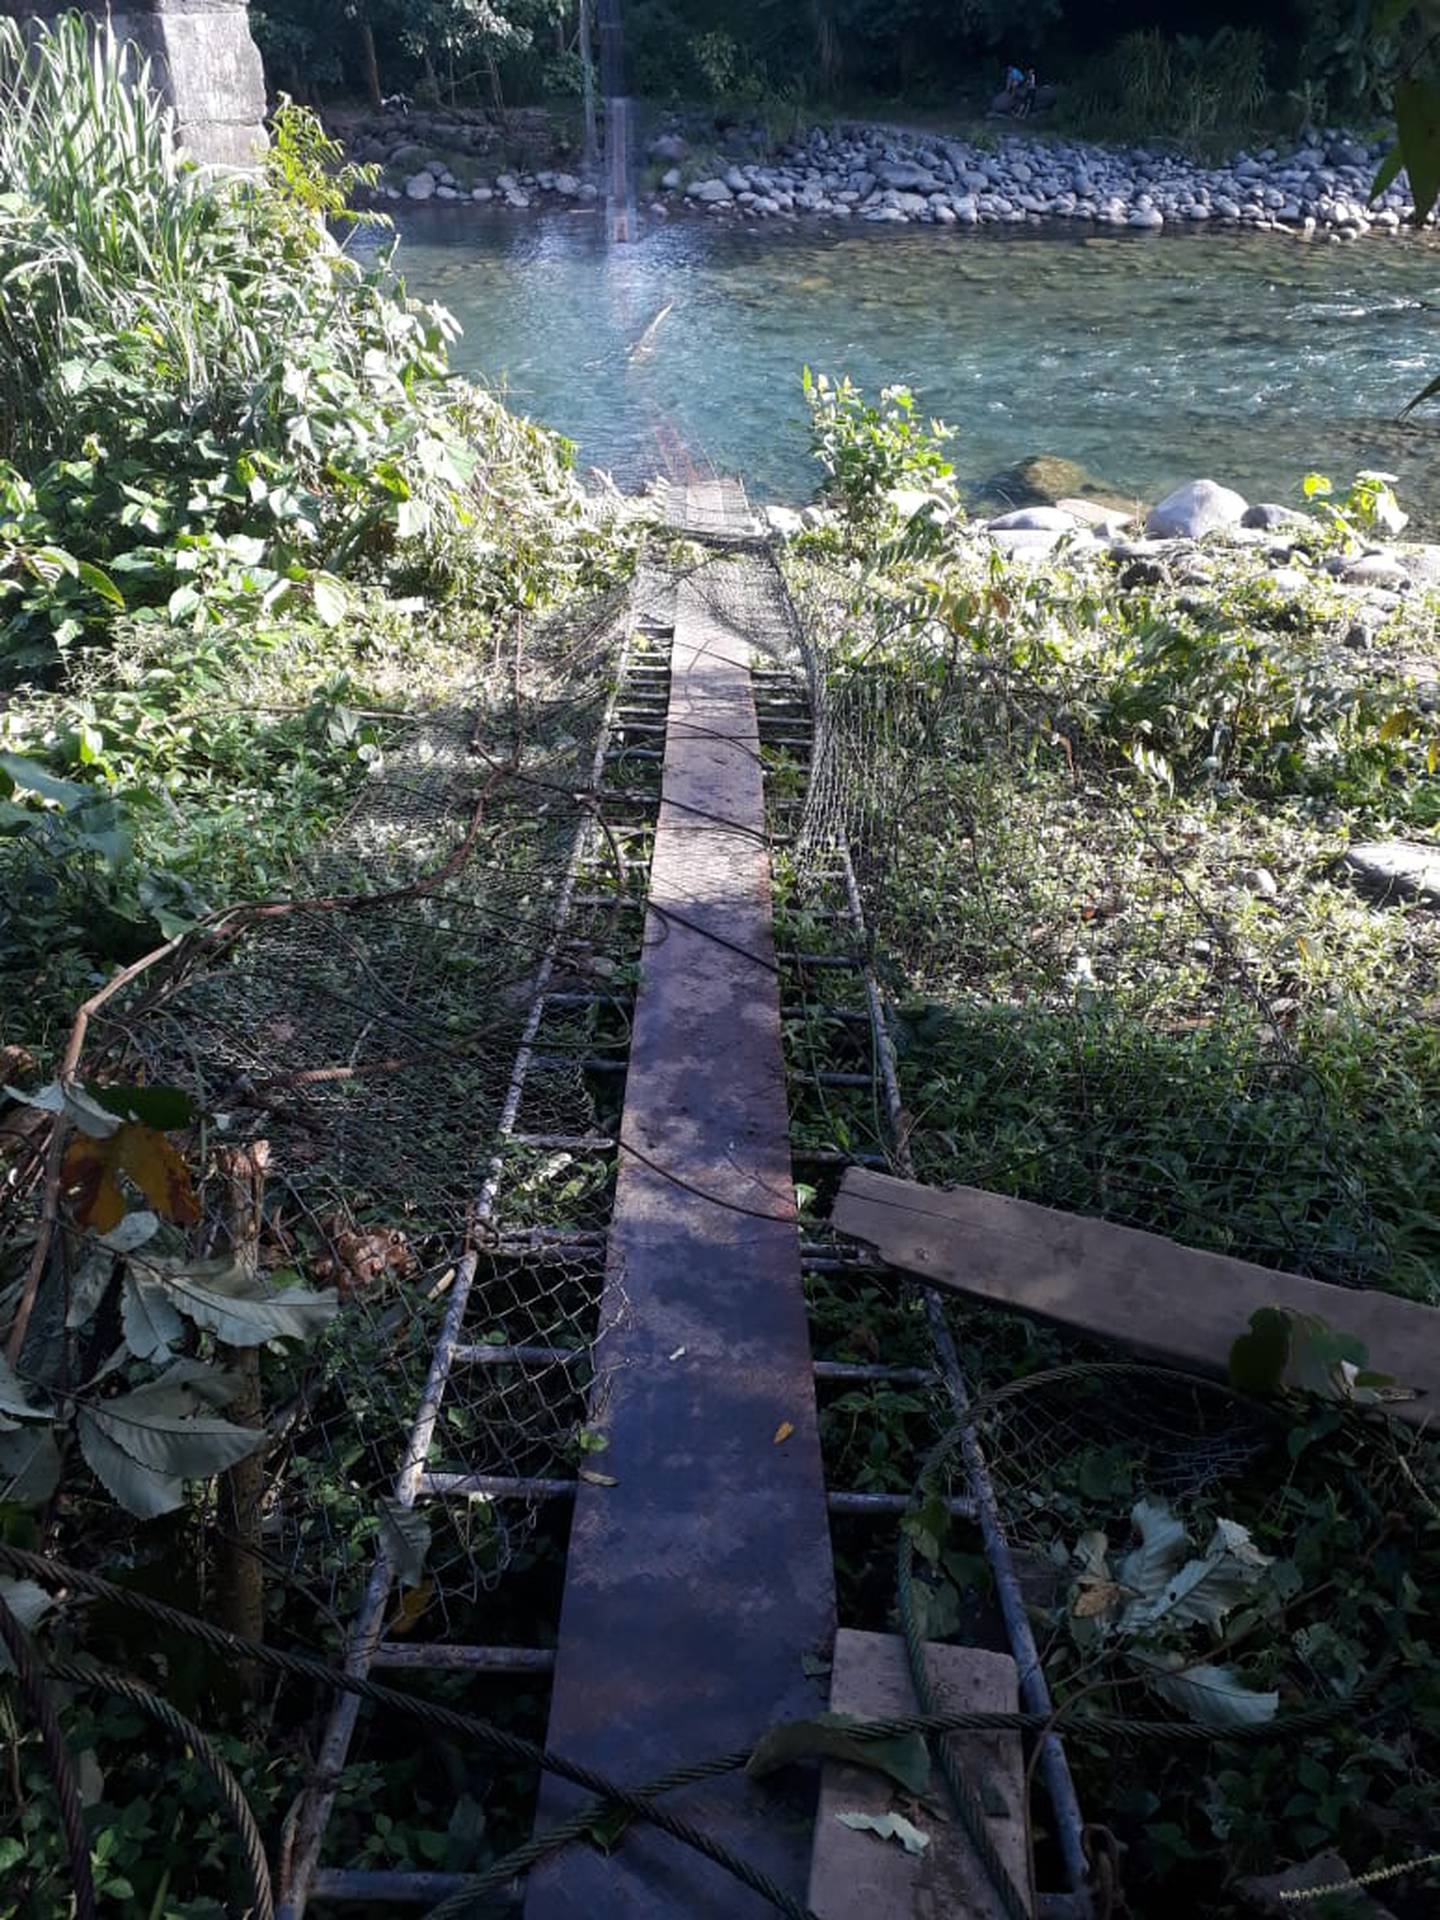 Productores agropecuarios de cacao, plátanos, pejibayes y bananos, cultivados en zonas indígenas de Matina eran trasladados por este puente que estaba en condiciones inadecuadas. Foto: Cortesía.